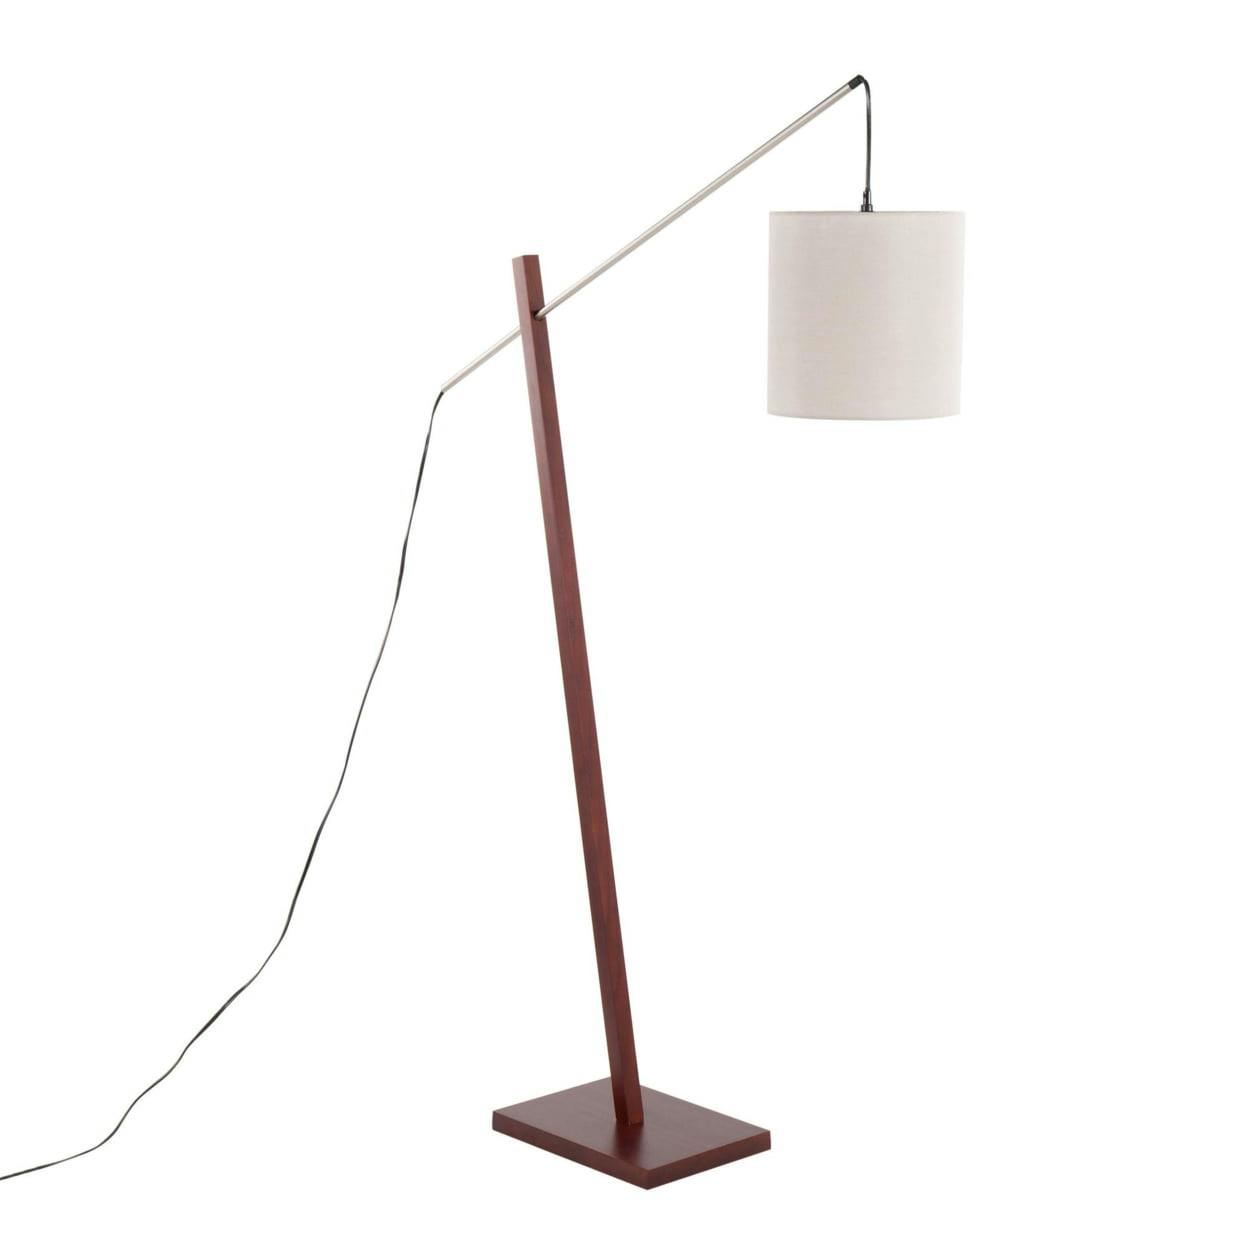 Arturo 42" Walnut Wood Floor Lamp with Satin Nickel and Grey Shade